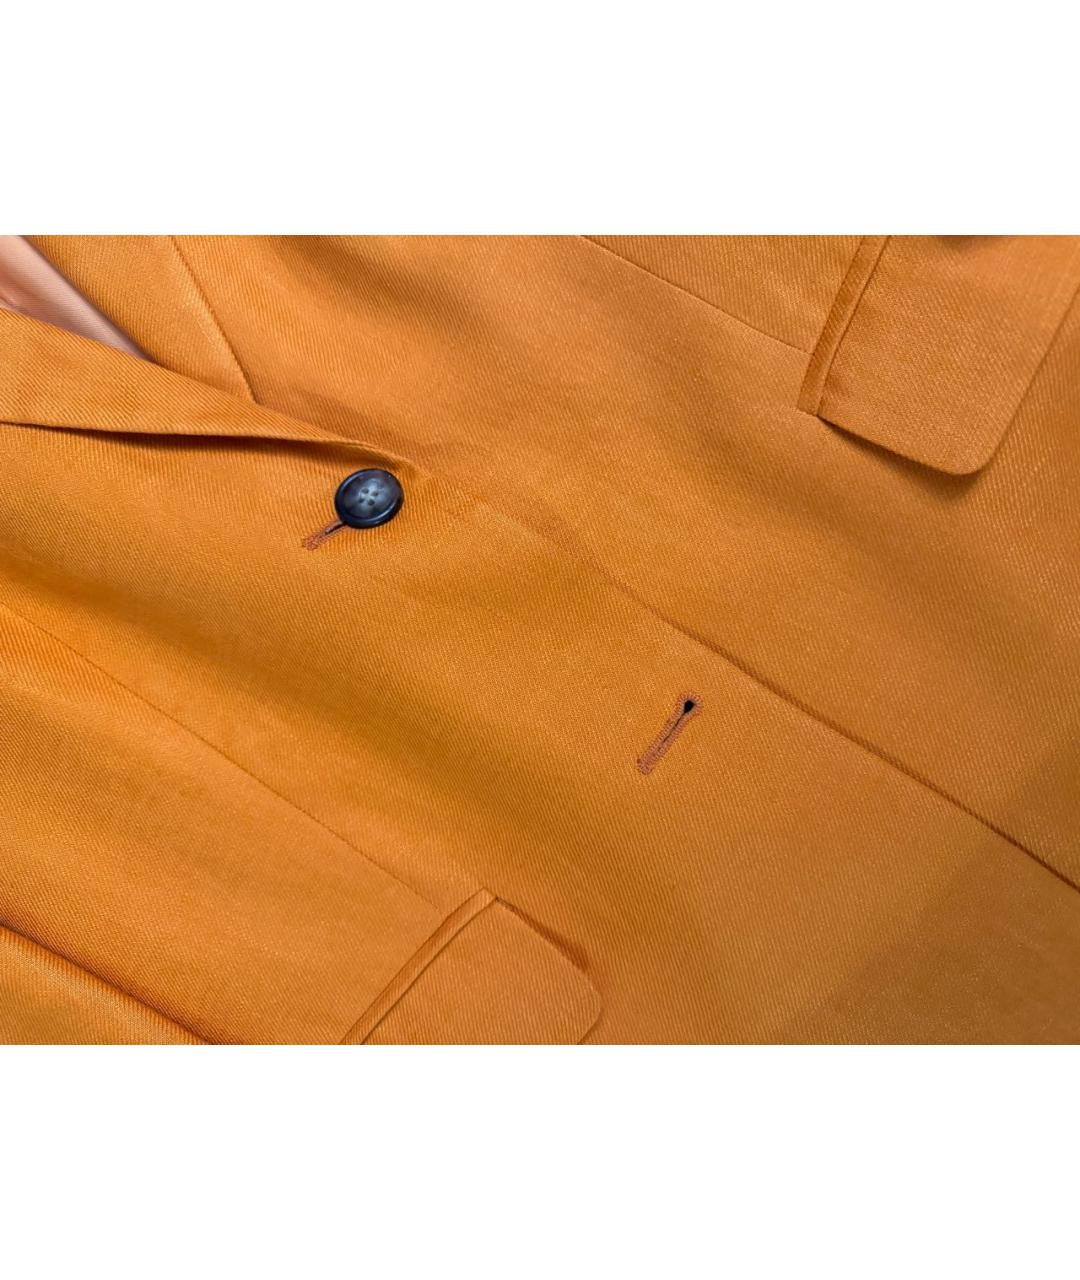 12 STOREEZ Оранжевый льняной жакет/пиджак, фото 7